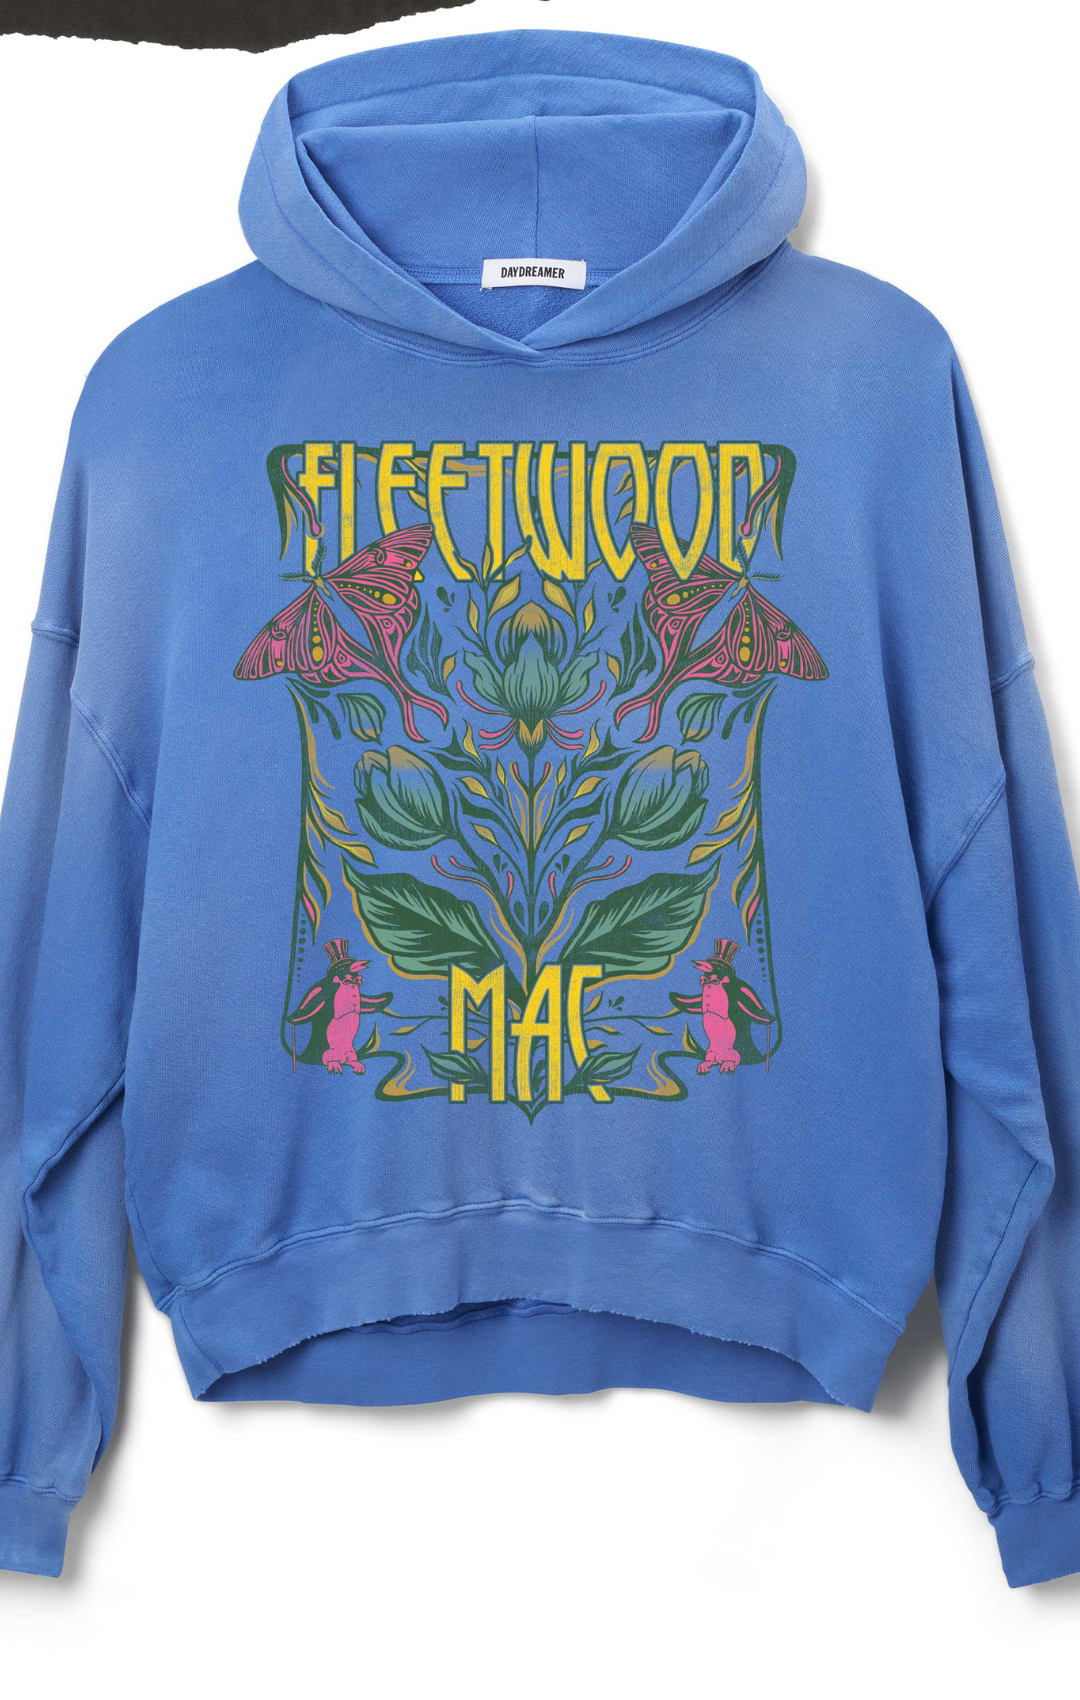 Fleetwood Mac Butterflies Oversized Hoodie by Daydreamer